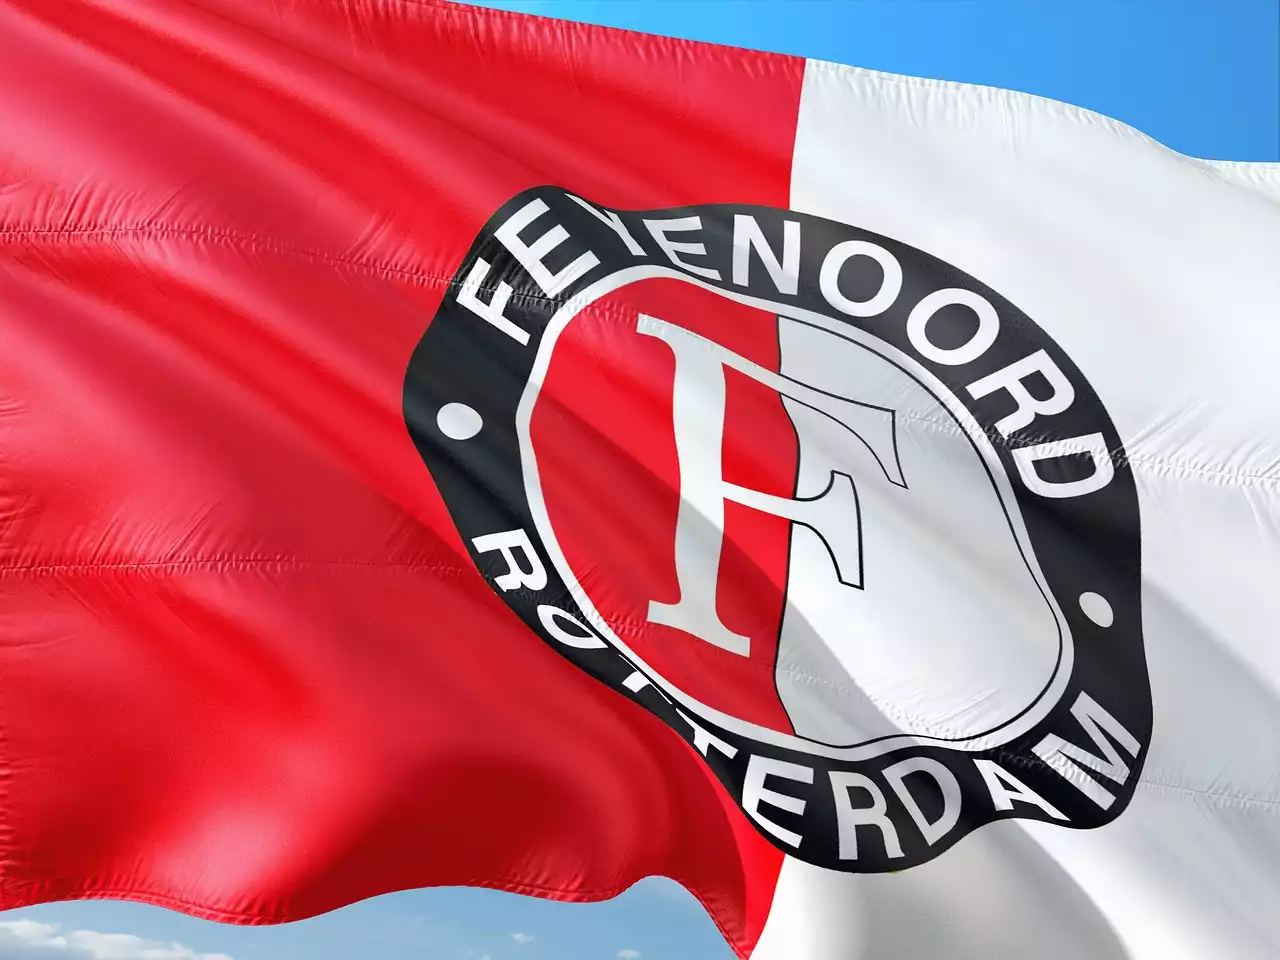 Legendärer Erfolg: Die 10 besten Vereine, die die glorreiche Vergangenheit der Eredivisie geprägt haben